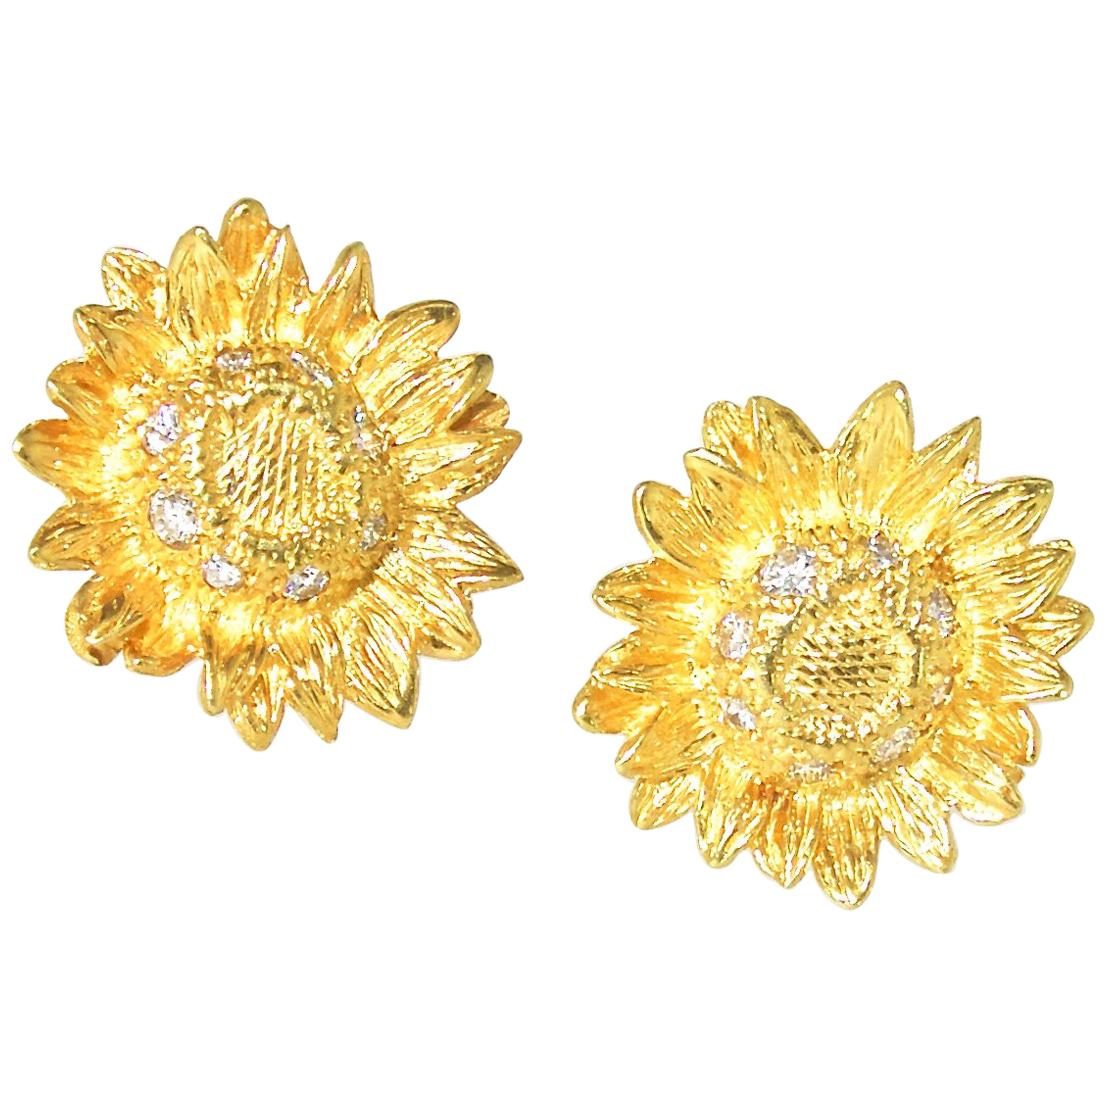 Asprey & Co. London 18 Karat Gold and Diamond Earrings